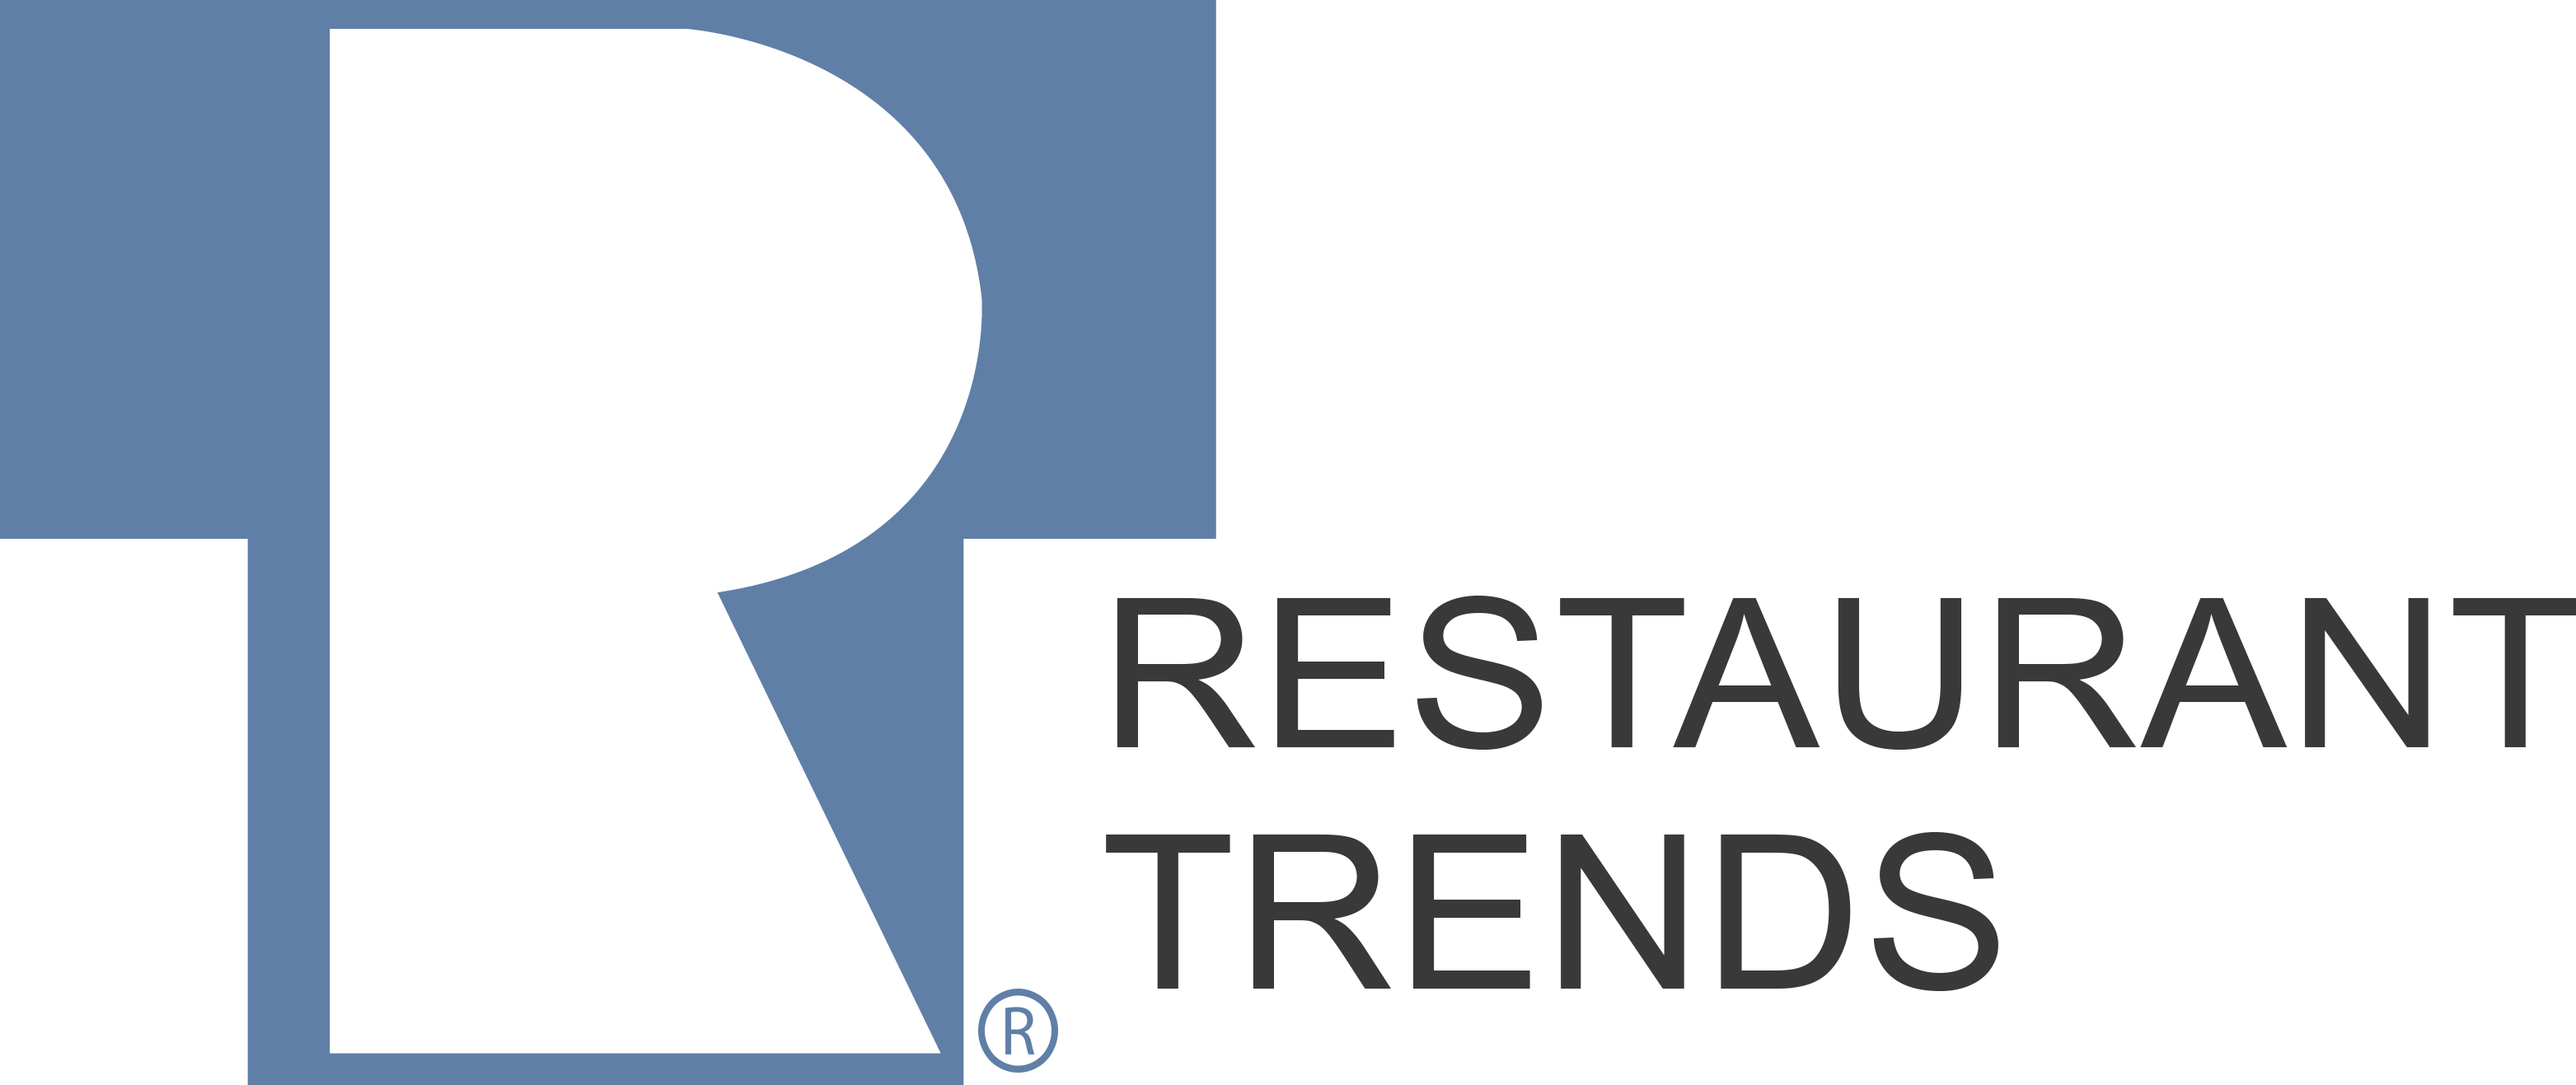 Restaurant Trends data available in SiteSeer Pro platform